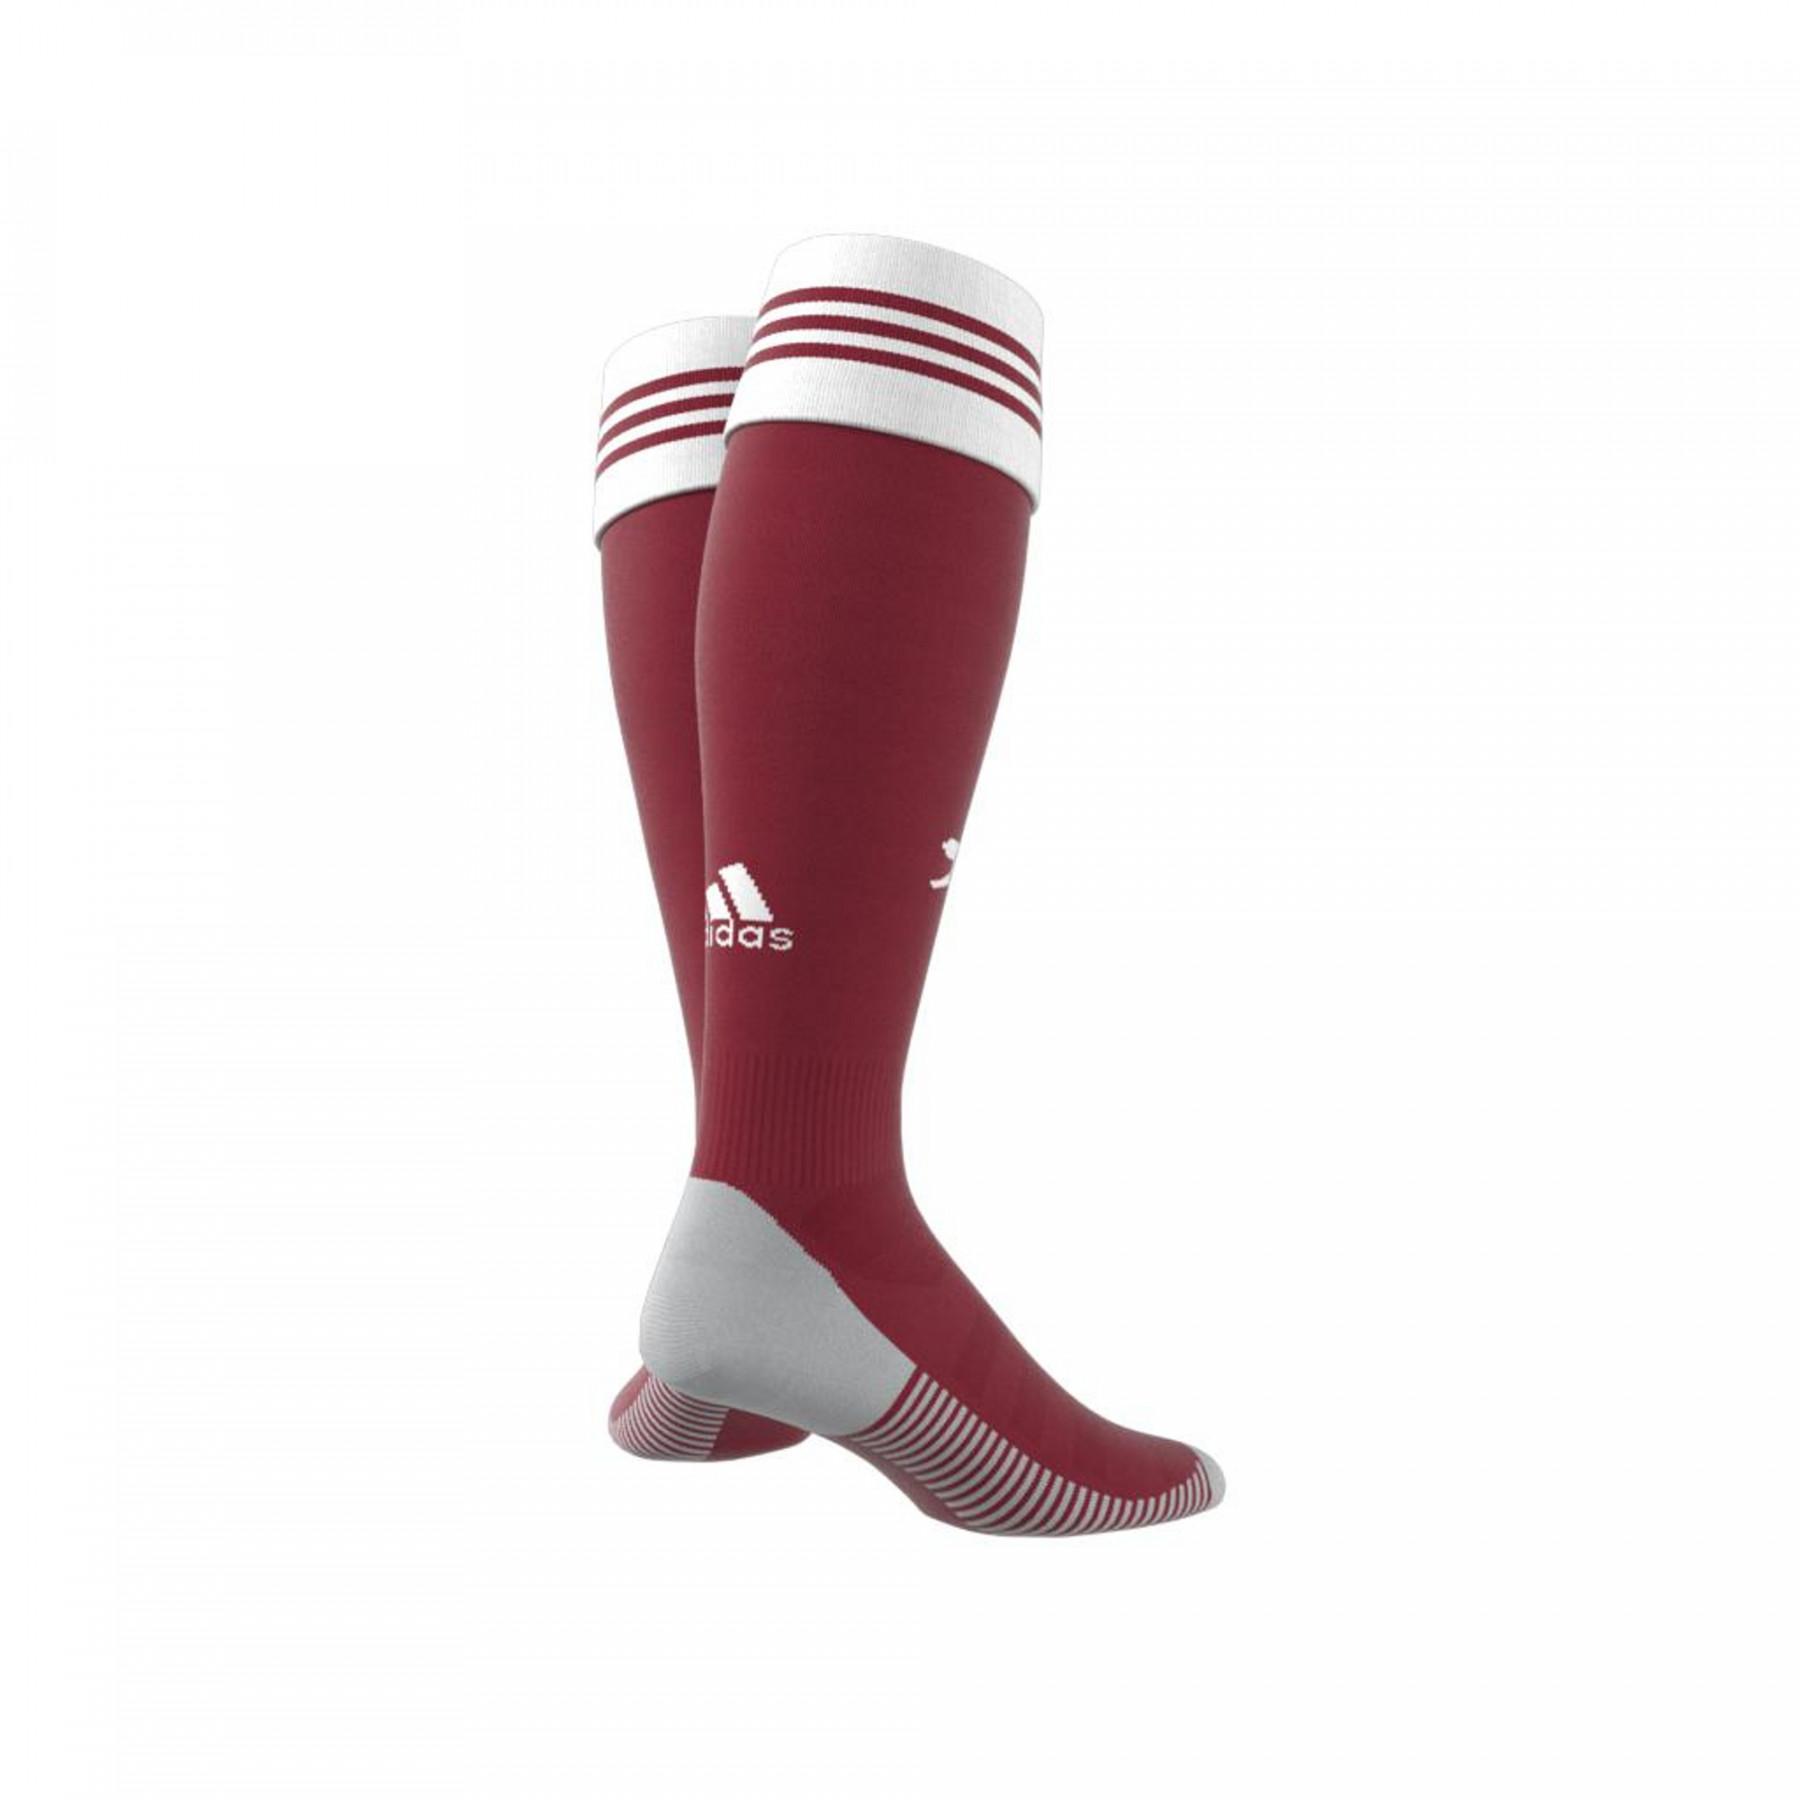 Home sokken Arsenal 2020/21